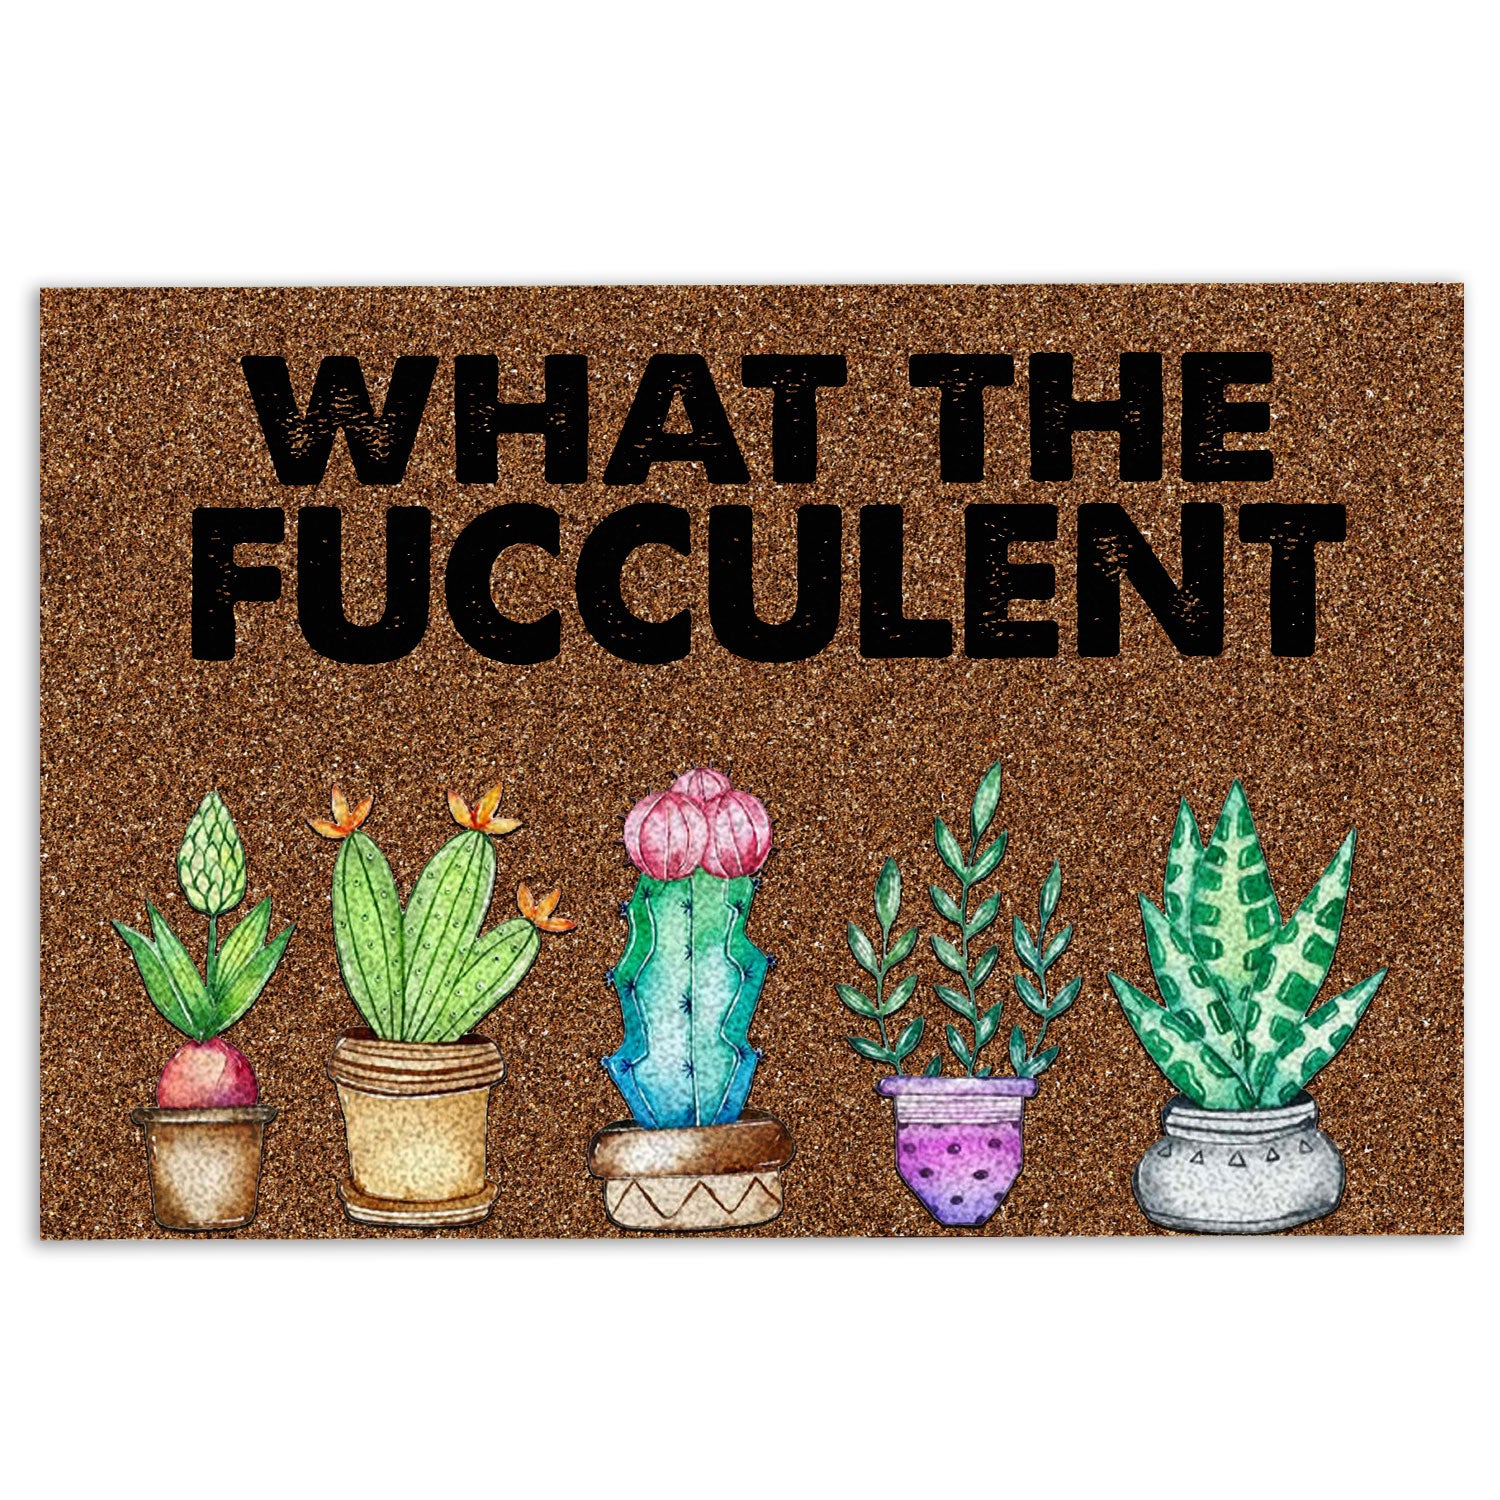 Succulent Cactus Svg, What the Fucculent Svg, Plant Mom Svg